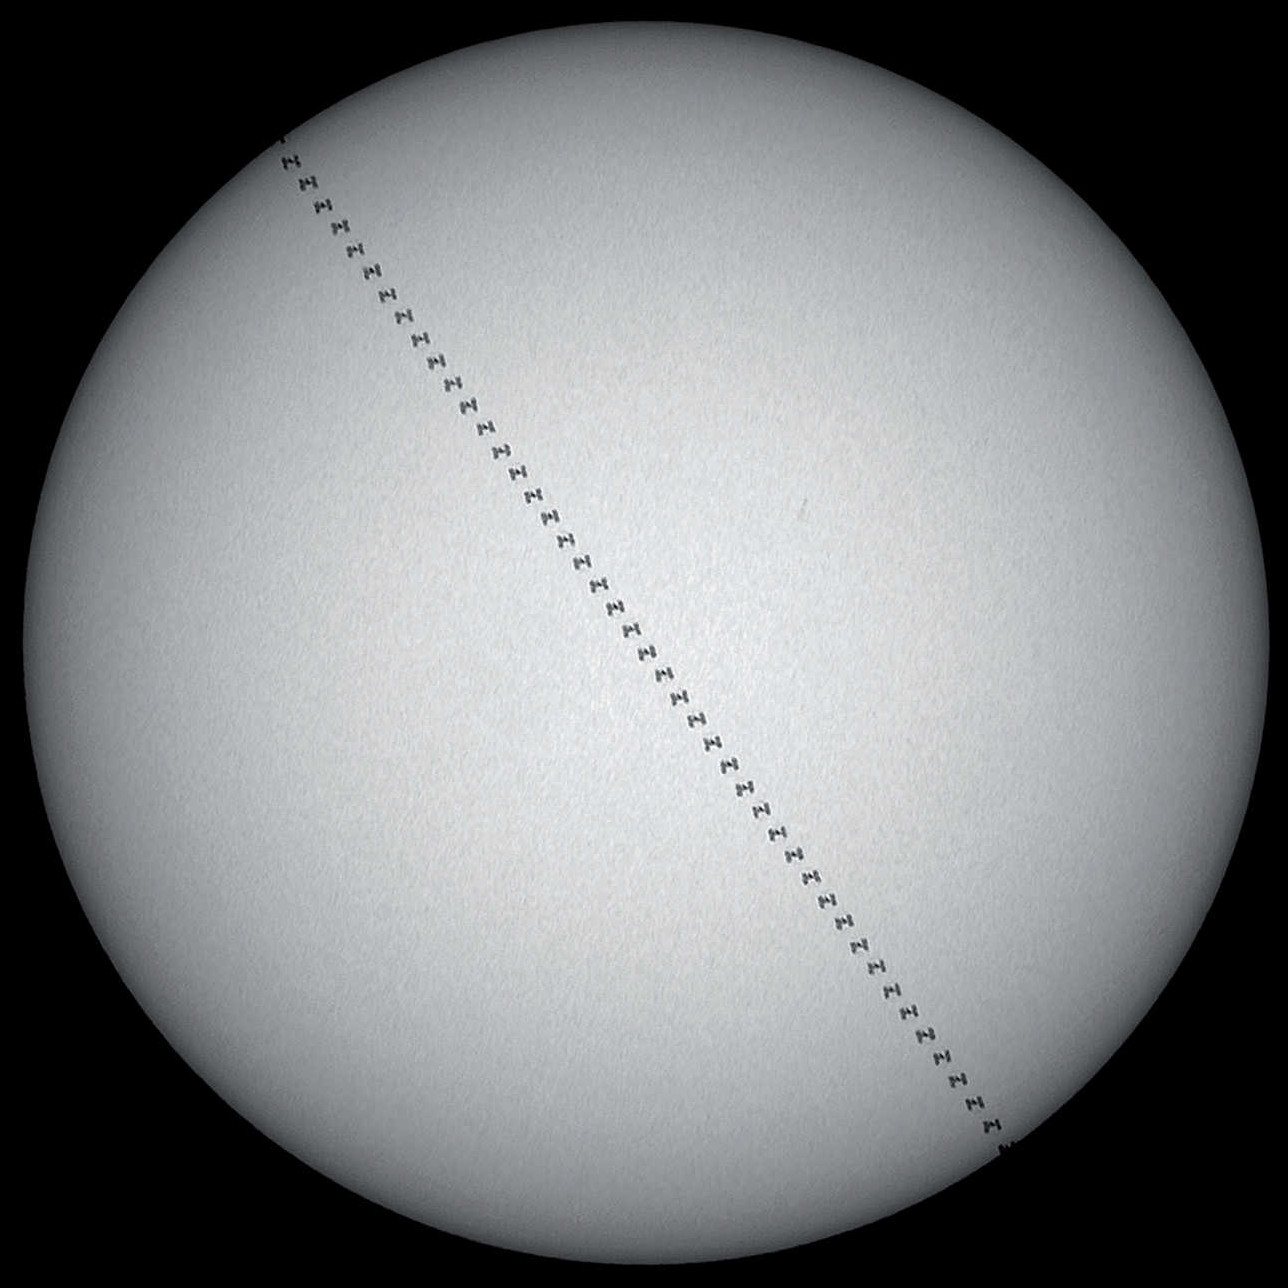 Późnym popołudniem w pogodny letni dzień można było sfotografować tranzyt ISS na tle zachodzącego Słońca nad Gutachtal w Szwarcwaldzie. Tranzyt miał miejsce o godzinie 18:31:58, gdy Słońce znajdowało jeszcze 24,9 stopnia nad południowo-zachodnim horyzontem. Odległość ISS od miejsca obserwacji wynosiła 870,7 km, tranzyt trwał 1,7 sekundy, a rozmiary kątowe stacji były średniej wielkości. Zdjęcie jest składanką 51 klatek połączonych w programie Photoshop. U. Dittler